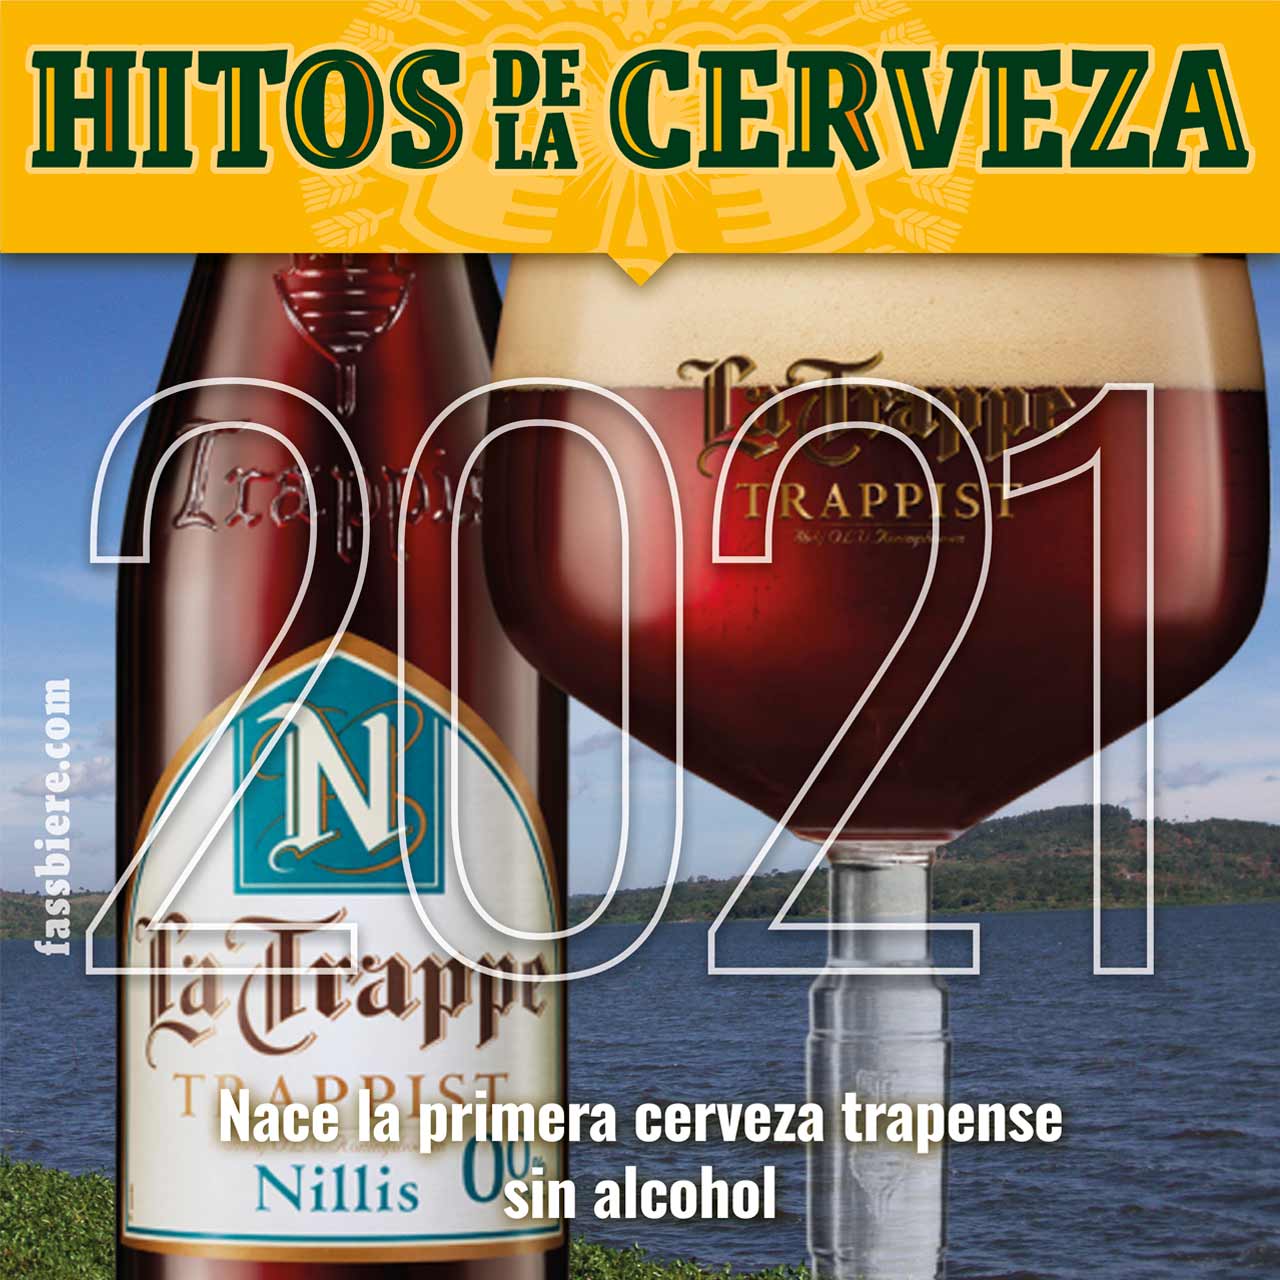 Hitos de la Cerveza en Fassbiere: En 2021 se lanza La Trappe Nillis, la primera cerveza trapense sin alcohol del mundo.